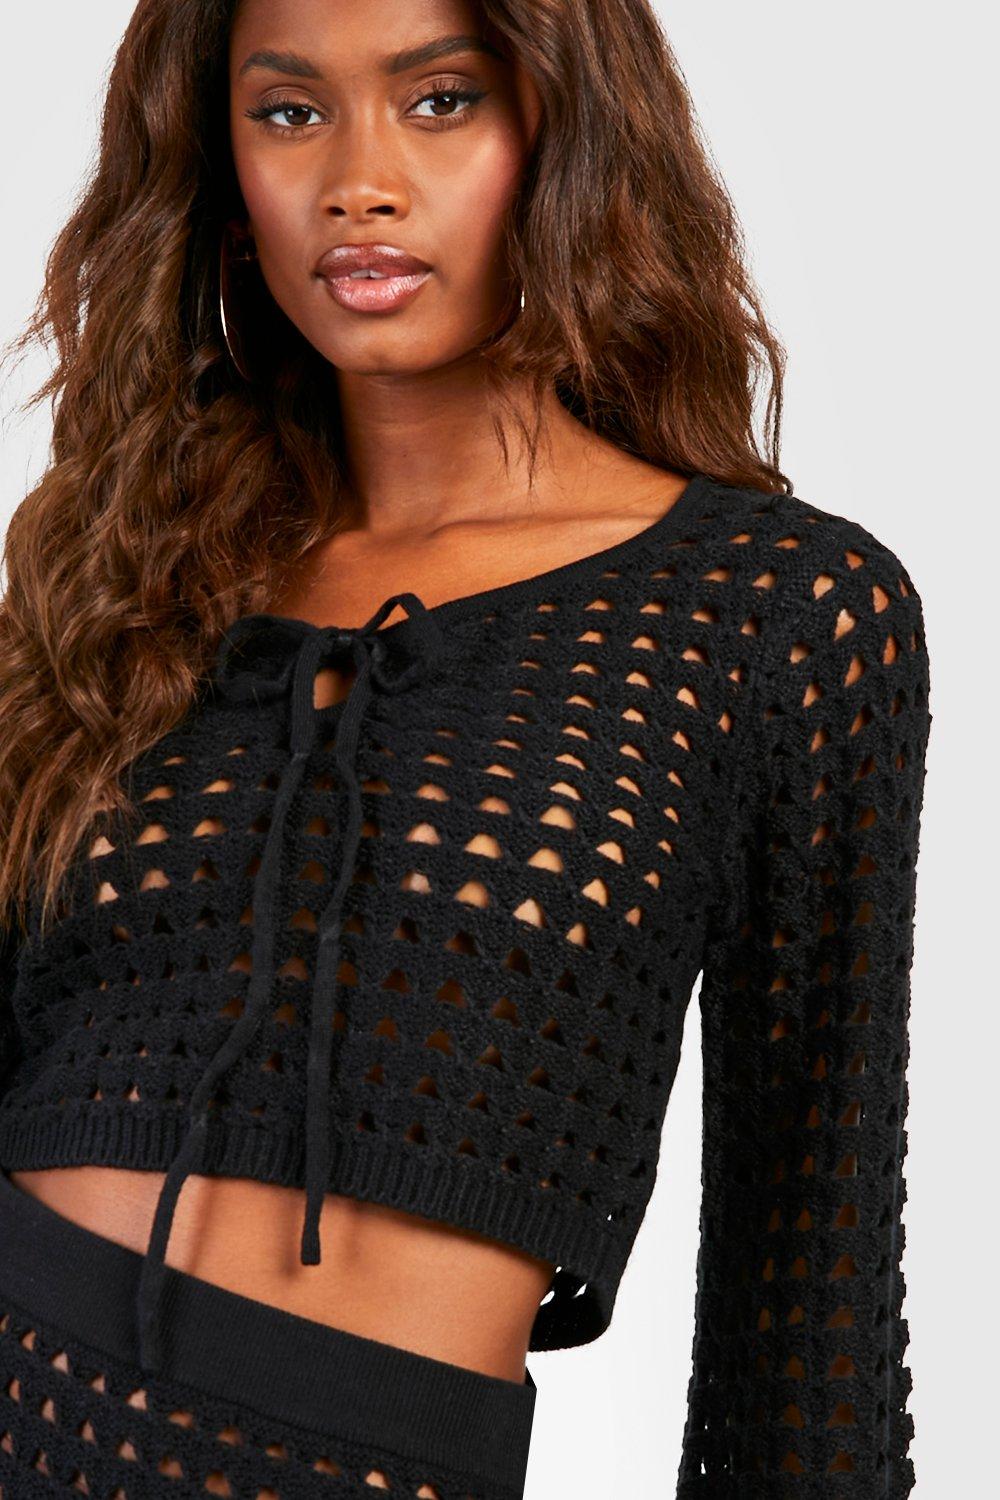 https://media.boohoo.com/i/boohoo/gzz50553_black_xl_3/female-black-crochet-lace-up-crop-top